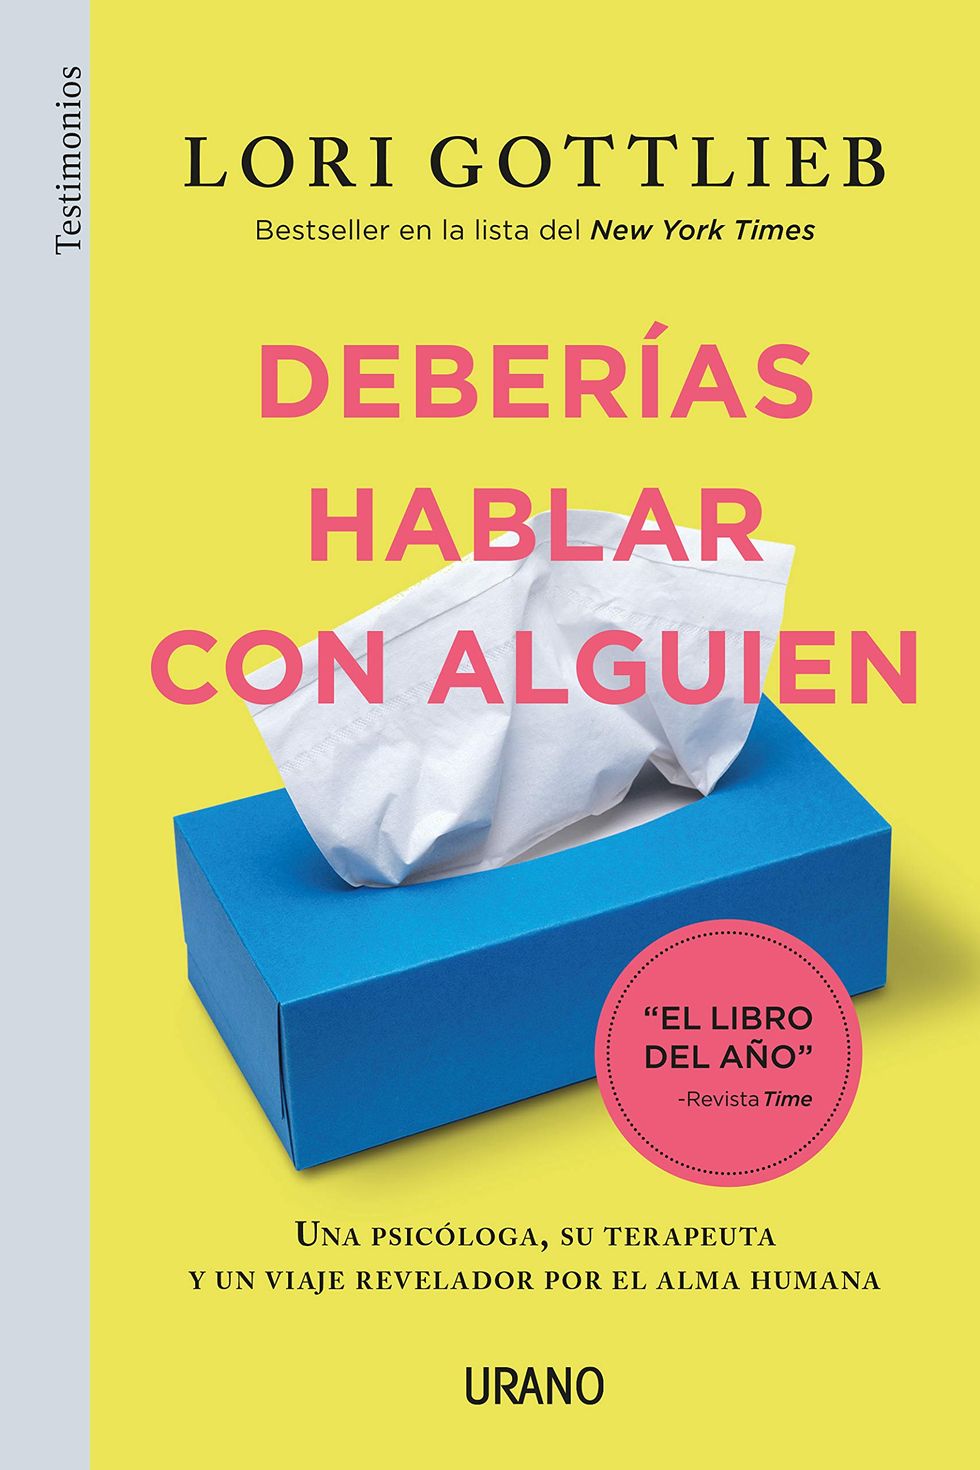 Para adolescentes: Libros con el tema de autoconfianza (español e